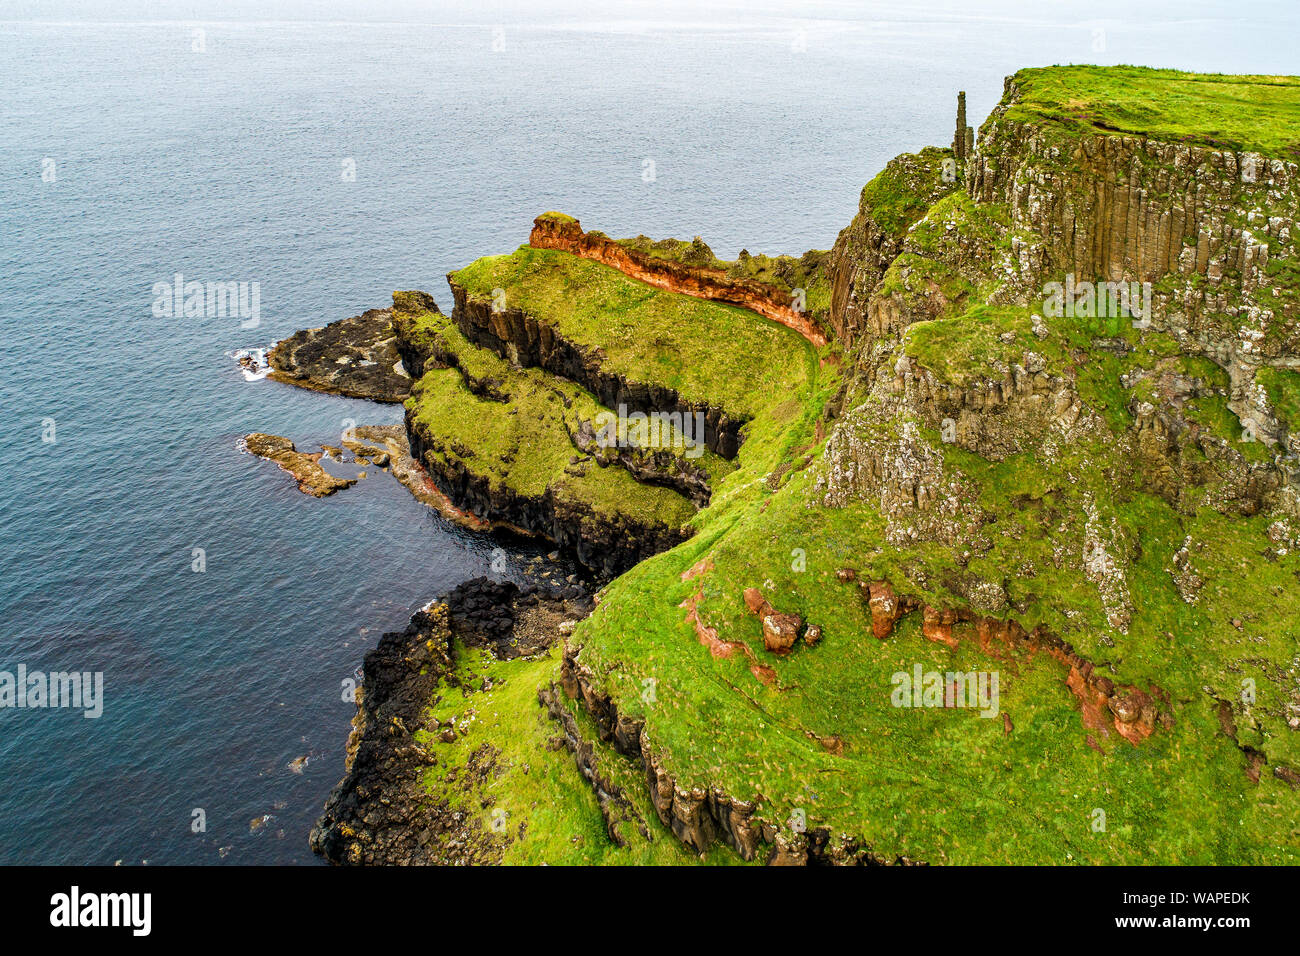 Irlanda del Nord, Regno Unito. Scogliere a costa atlantica nella contea di Antrim con visibile strati geologici e basalto vulcanico formazione di naturale pol esagonale Foto Stock